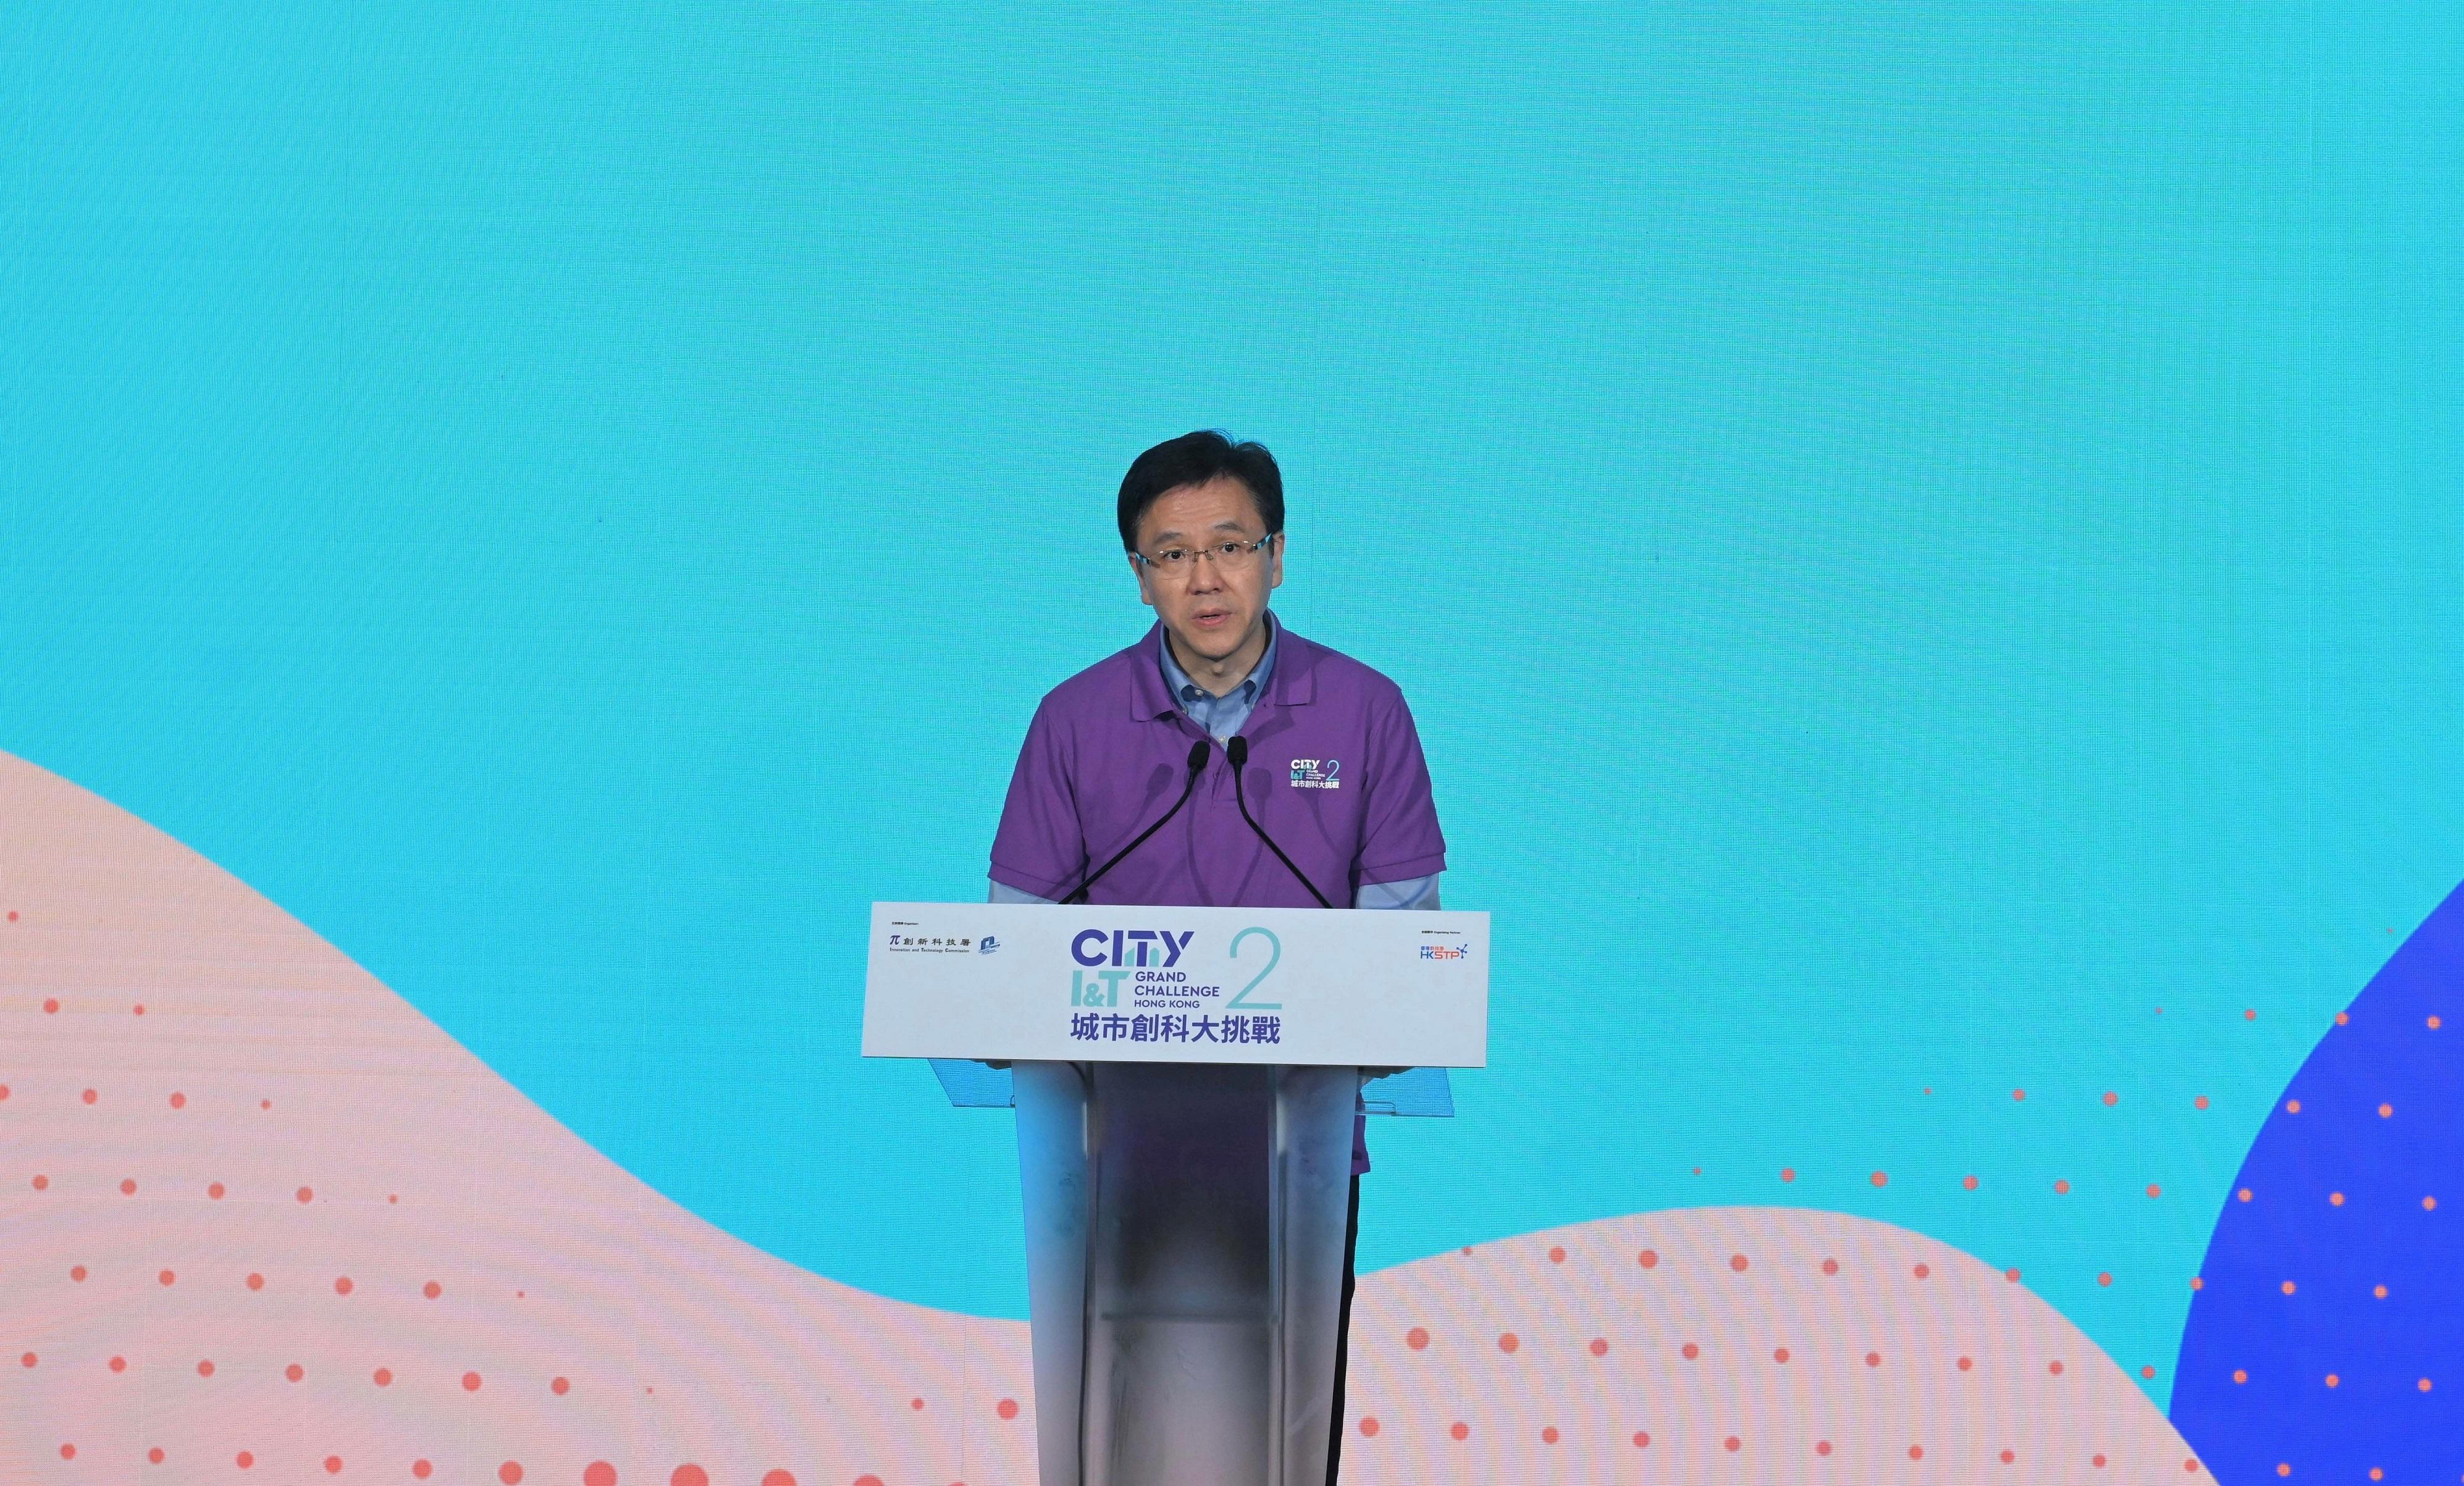 創新科技及工業局局長孫東教授在啓動禮上致歡迎辭。